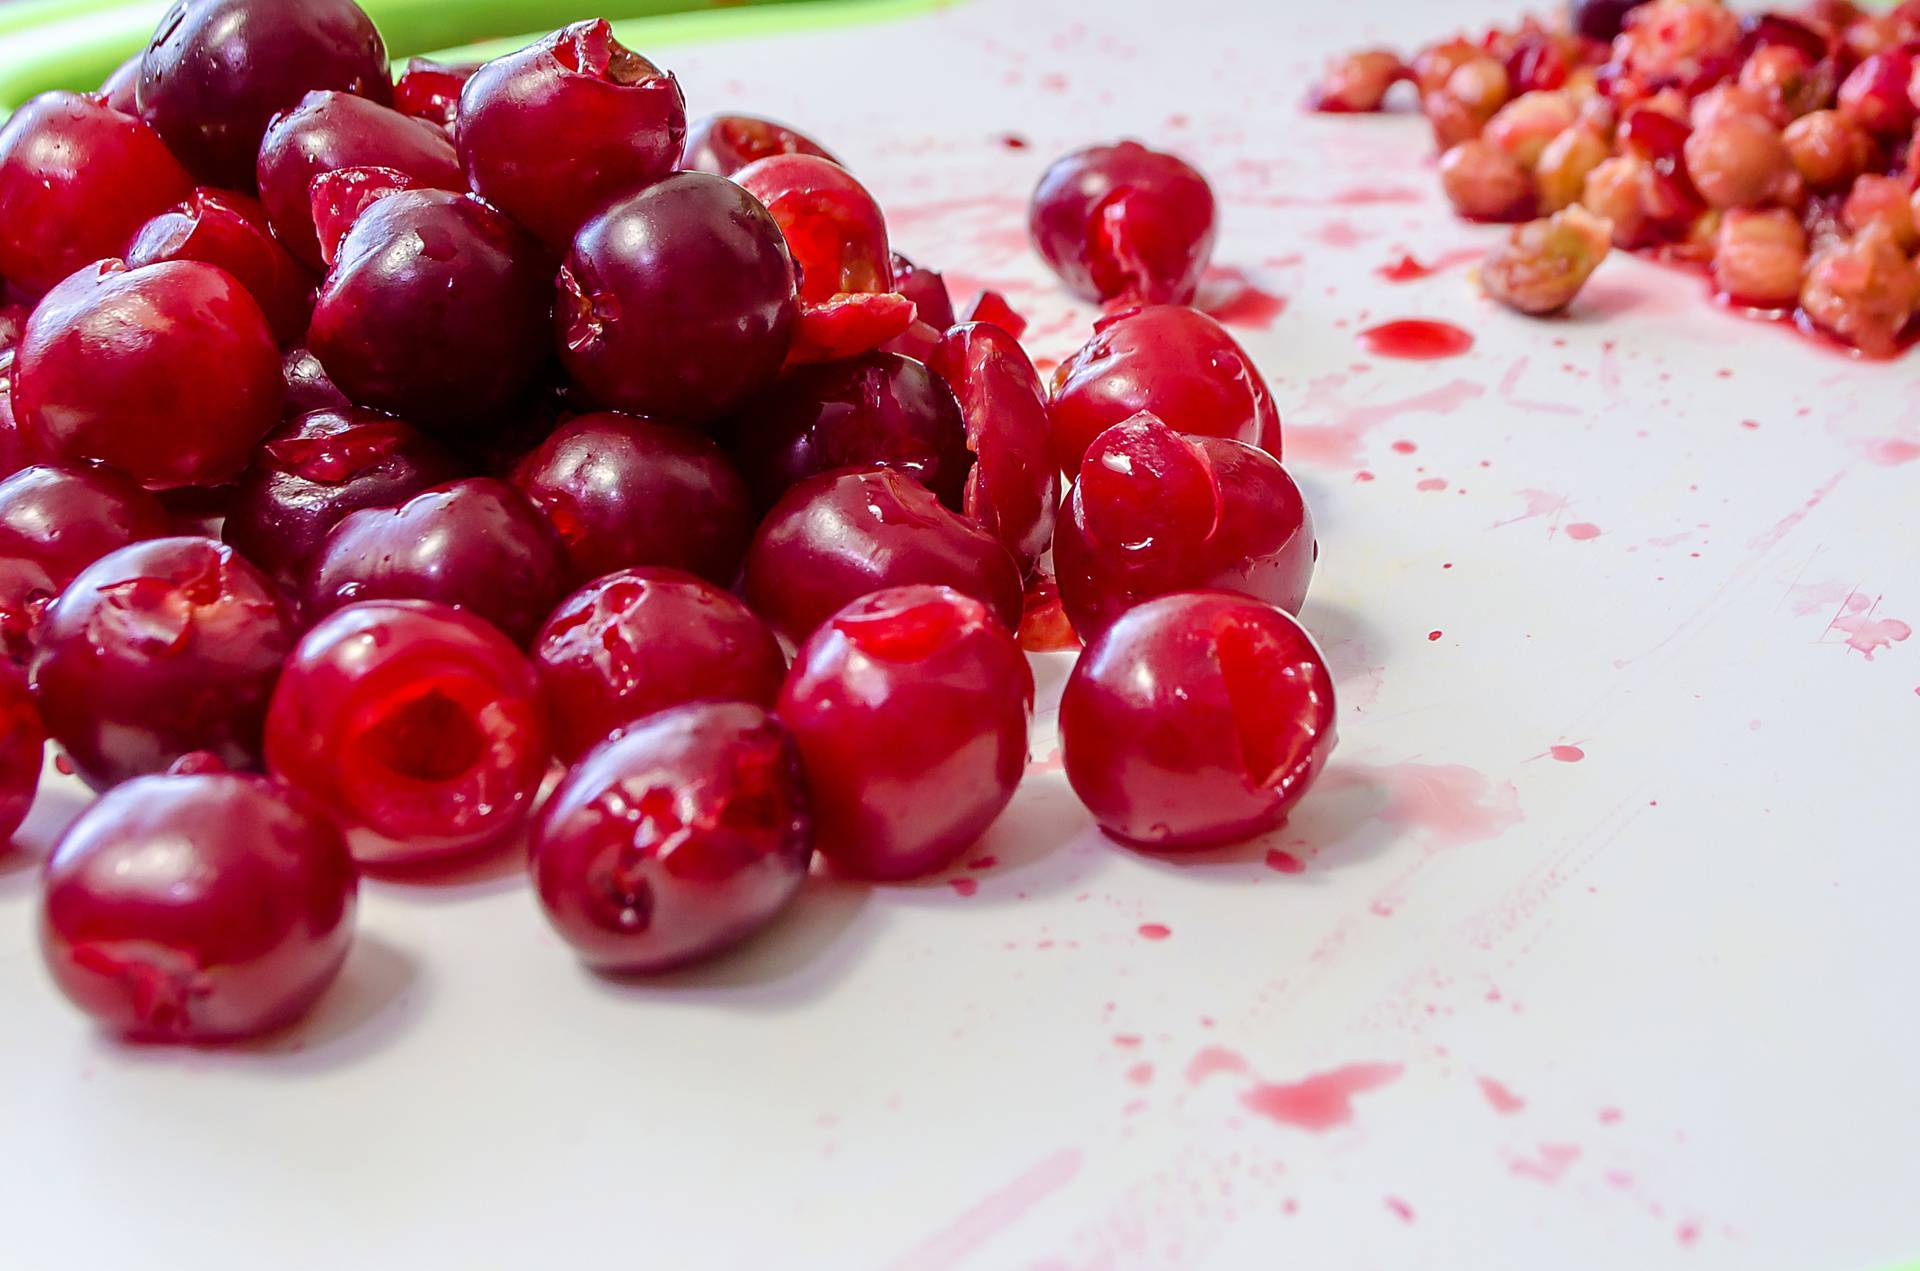 Trik kako očistiti višnje i trešnje od koštica brzo, lako i bez puno nereda - plodovi će ostati čitavi